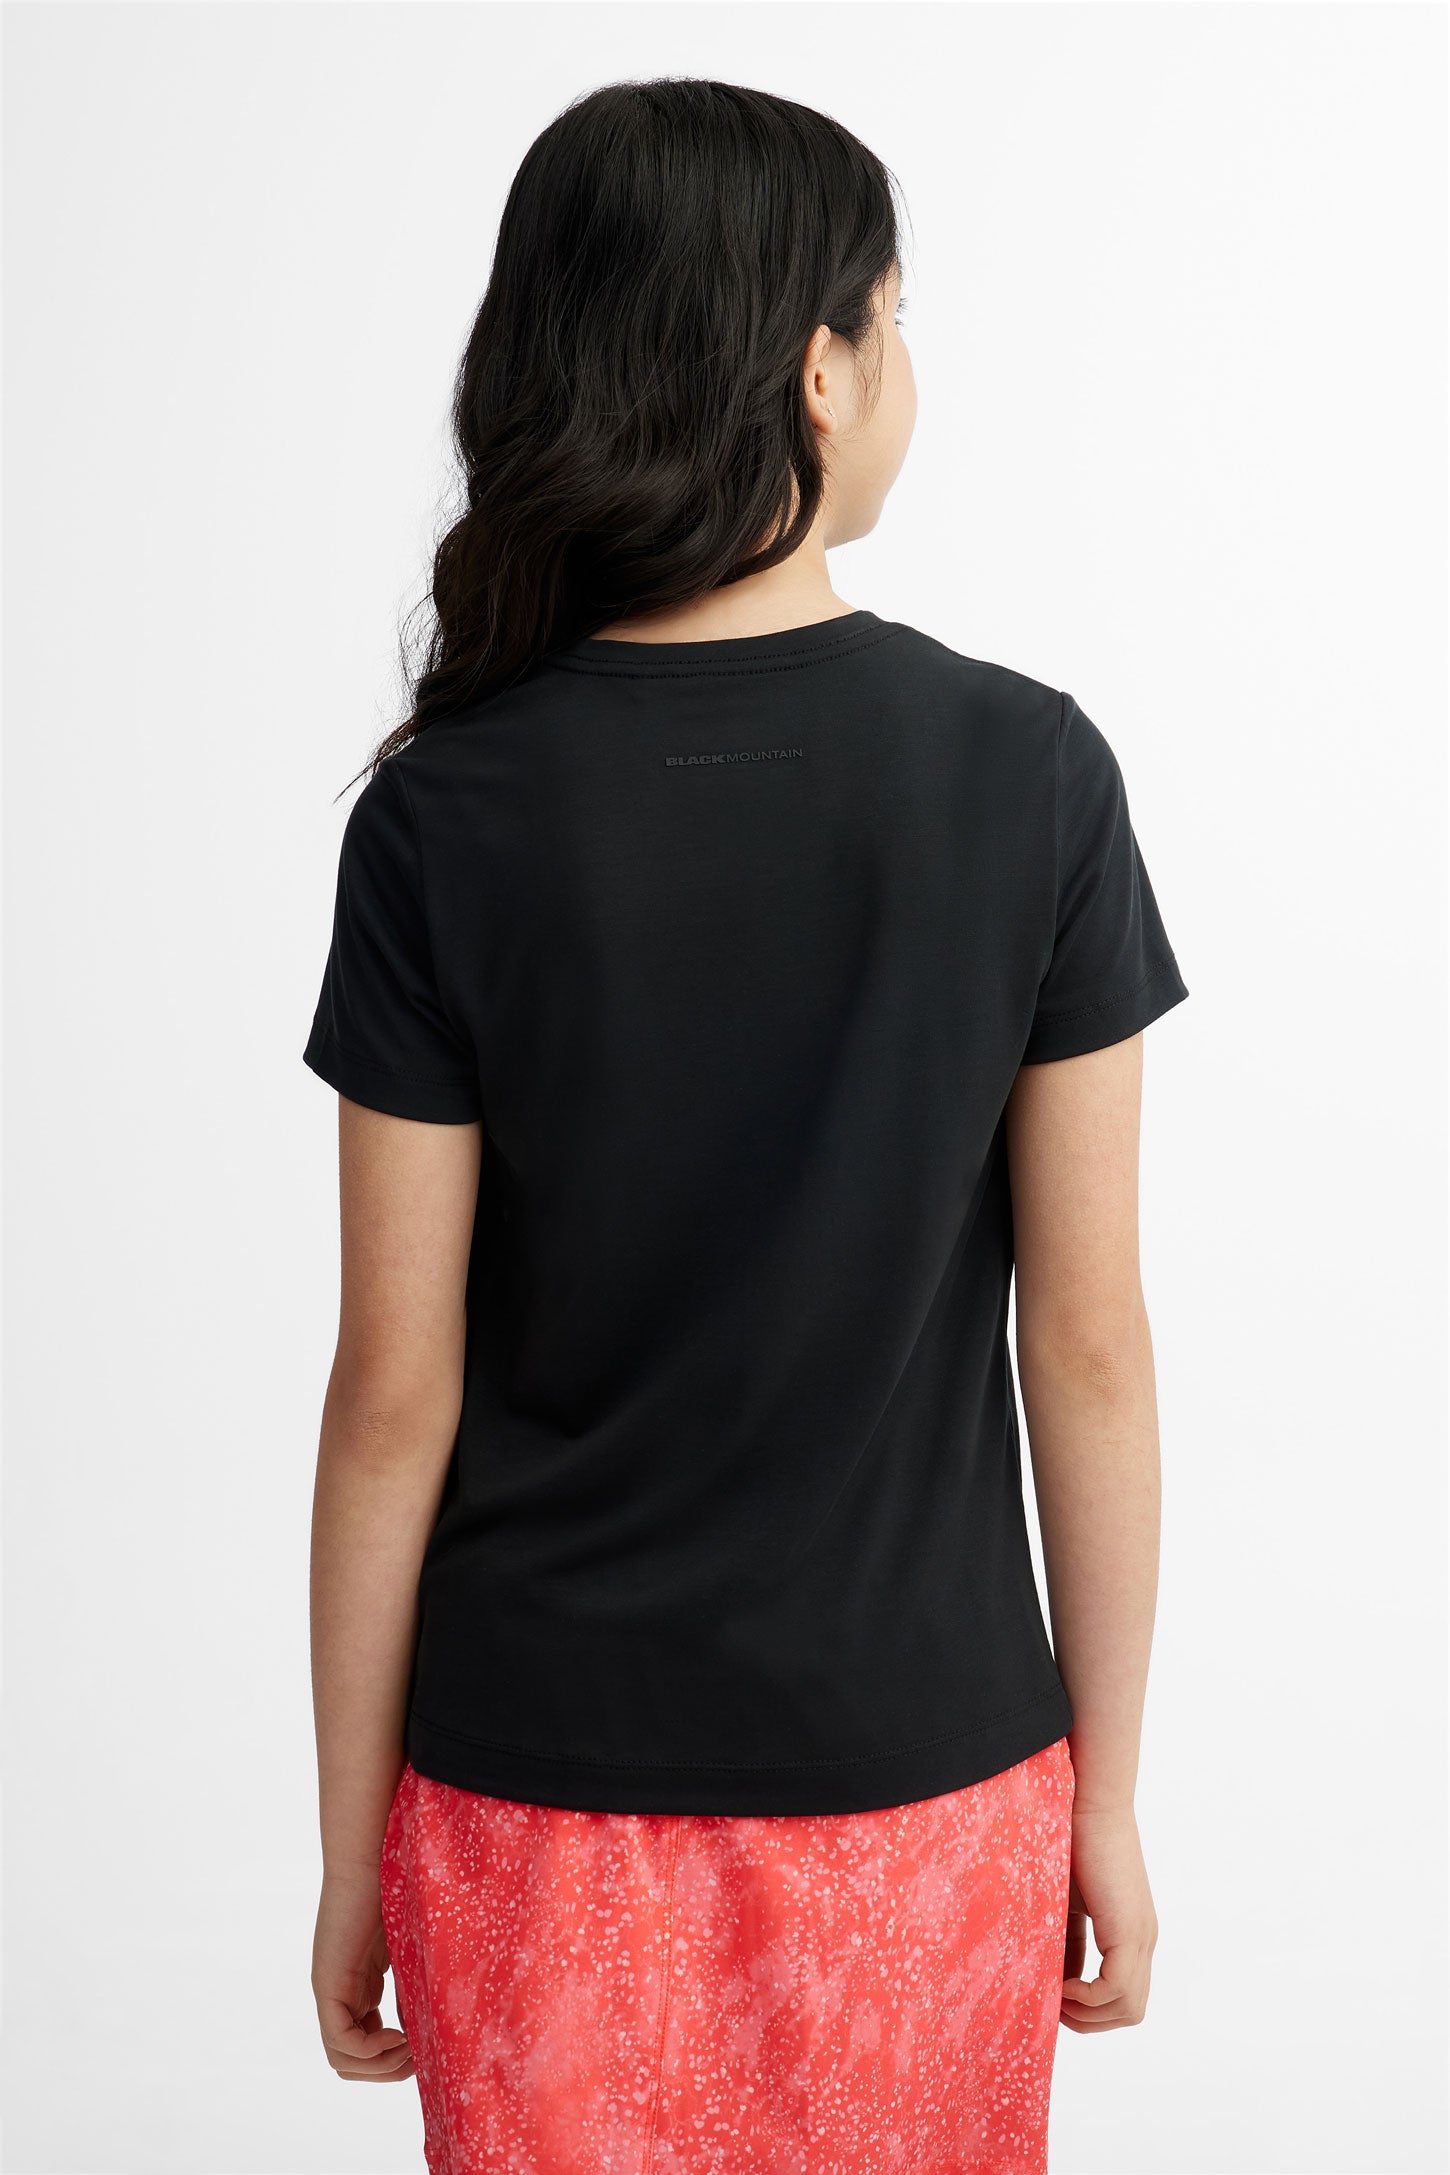 T-shirt col rond en Lyocell BM, 2/40$ - Ado fille && NOIR